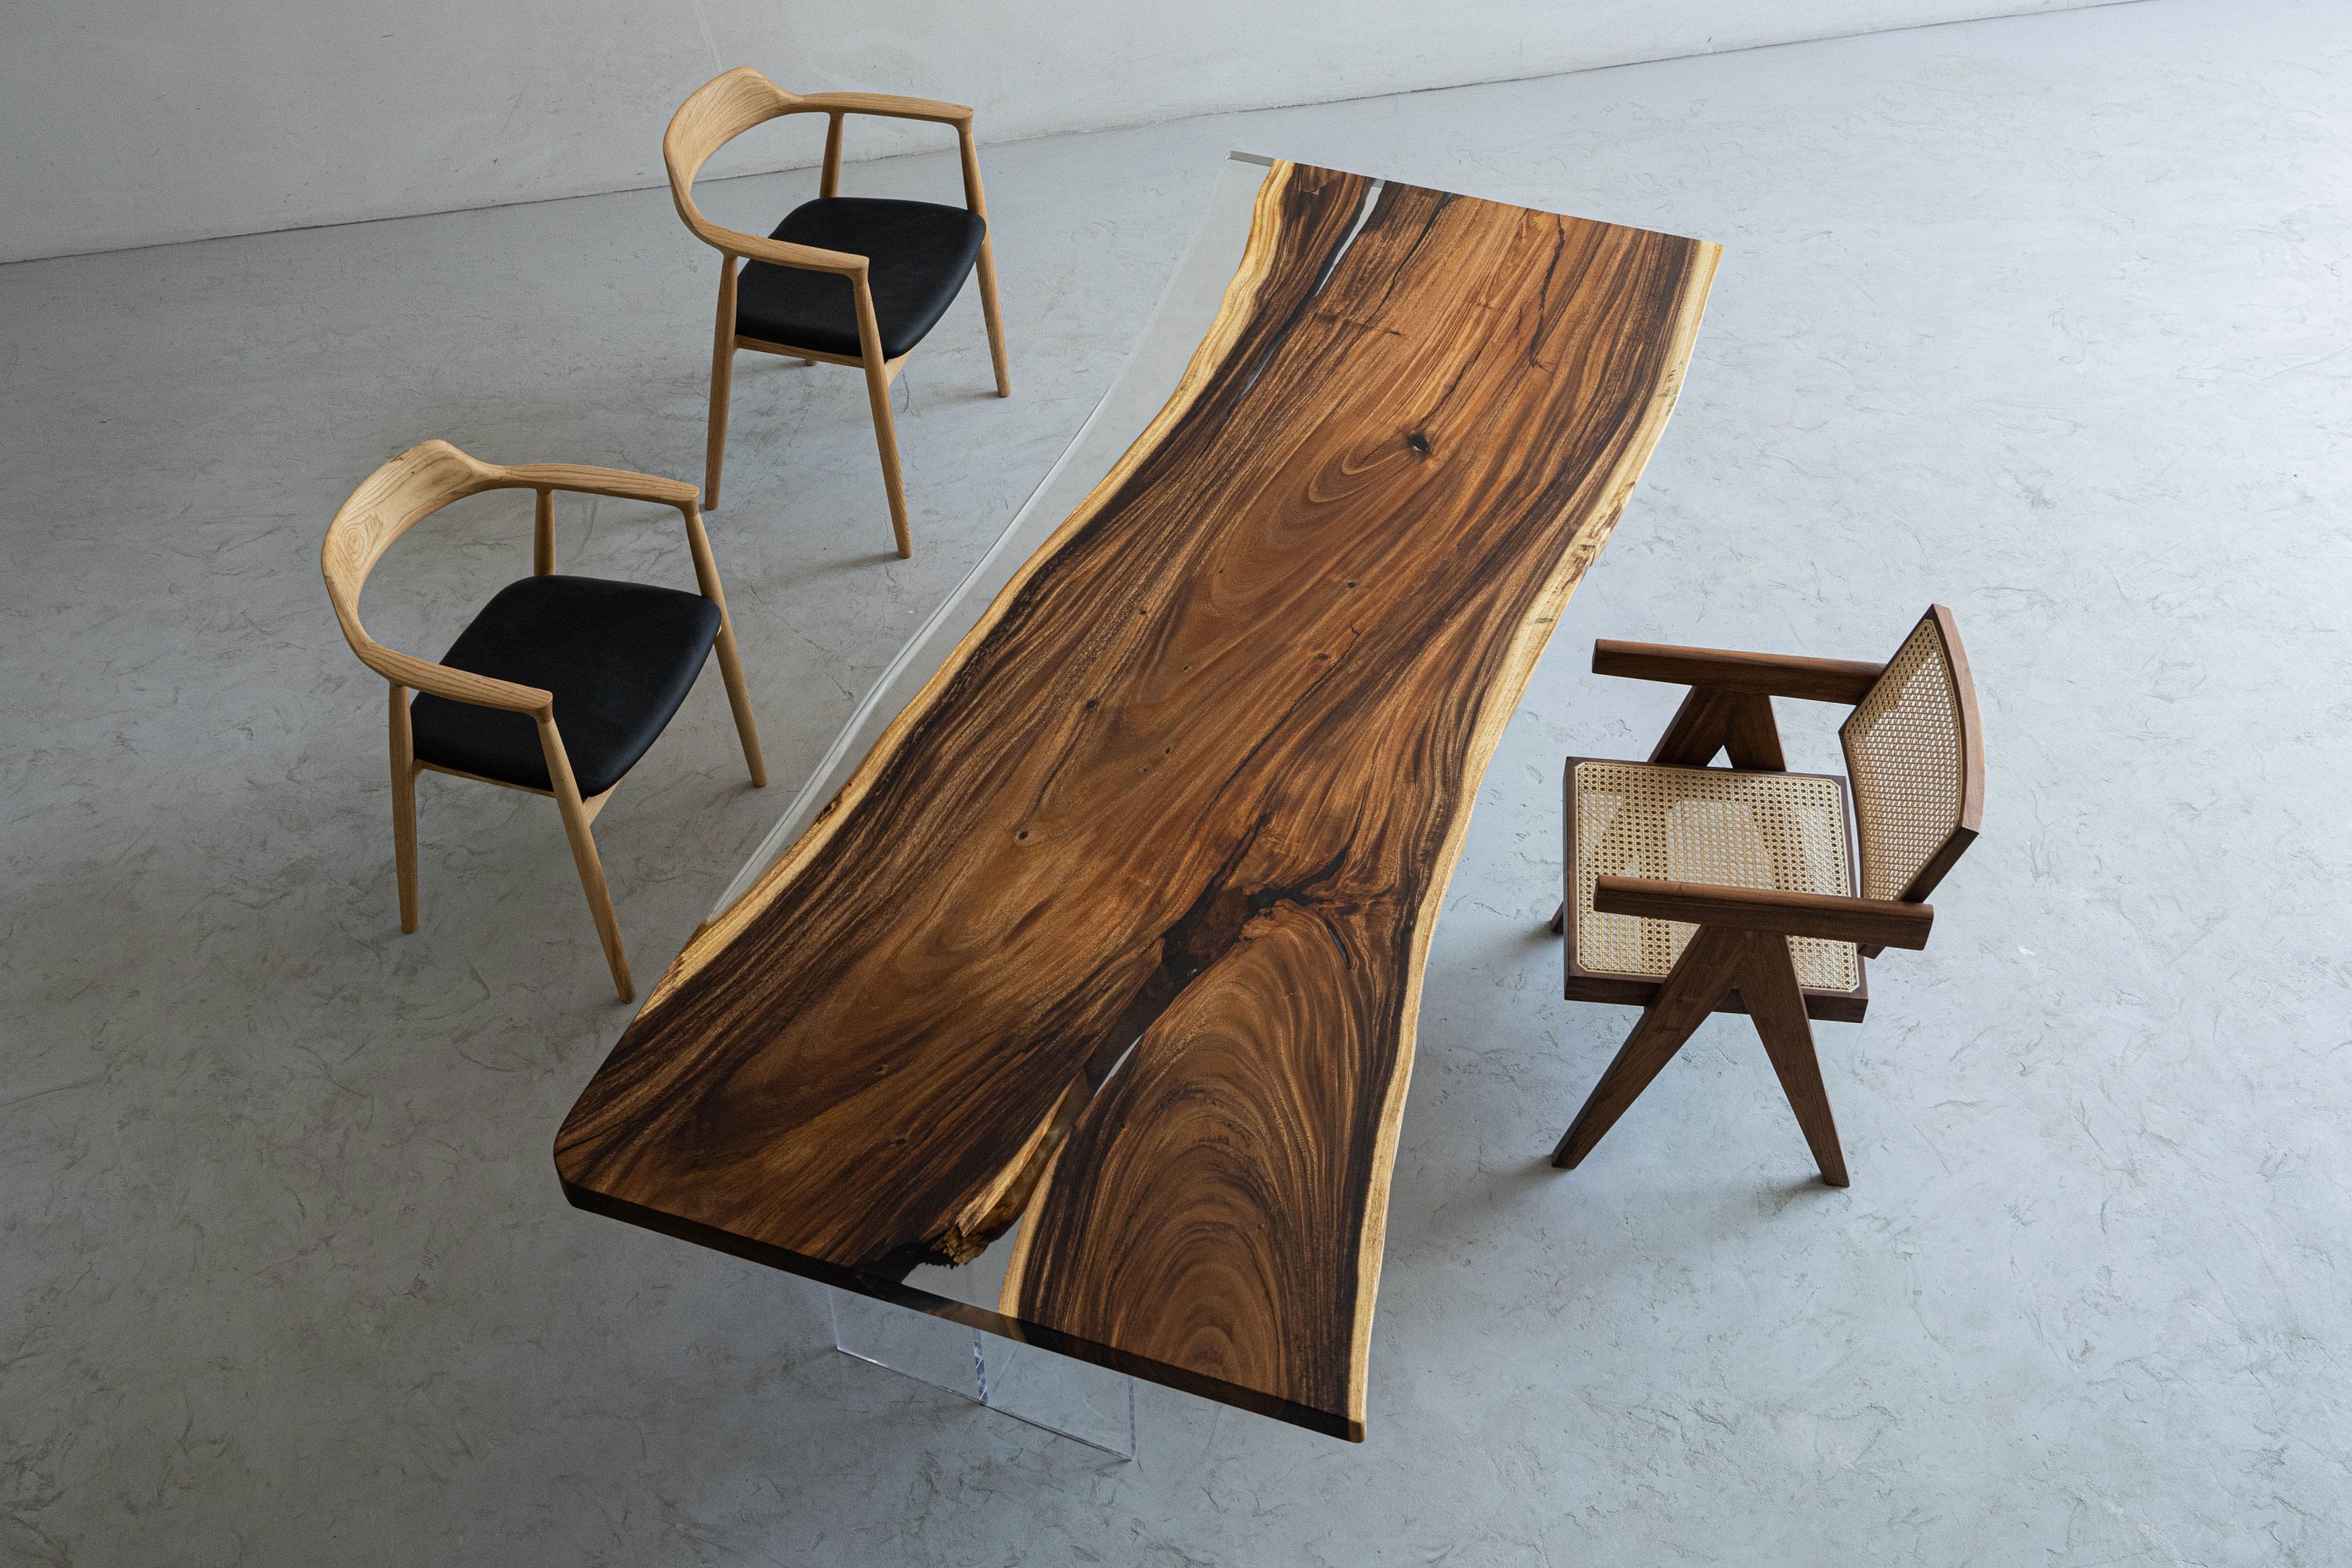 table rectangulaire, table en bois massif, table solide, table de bureau, table en bois